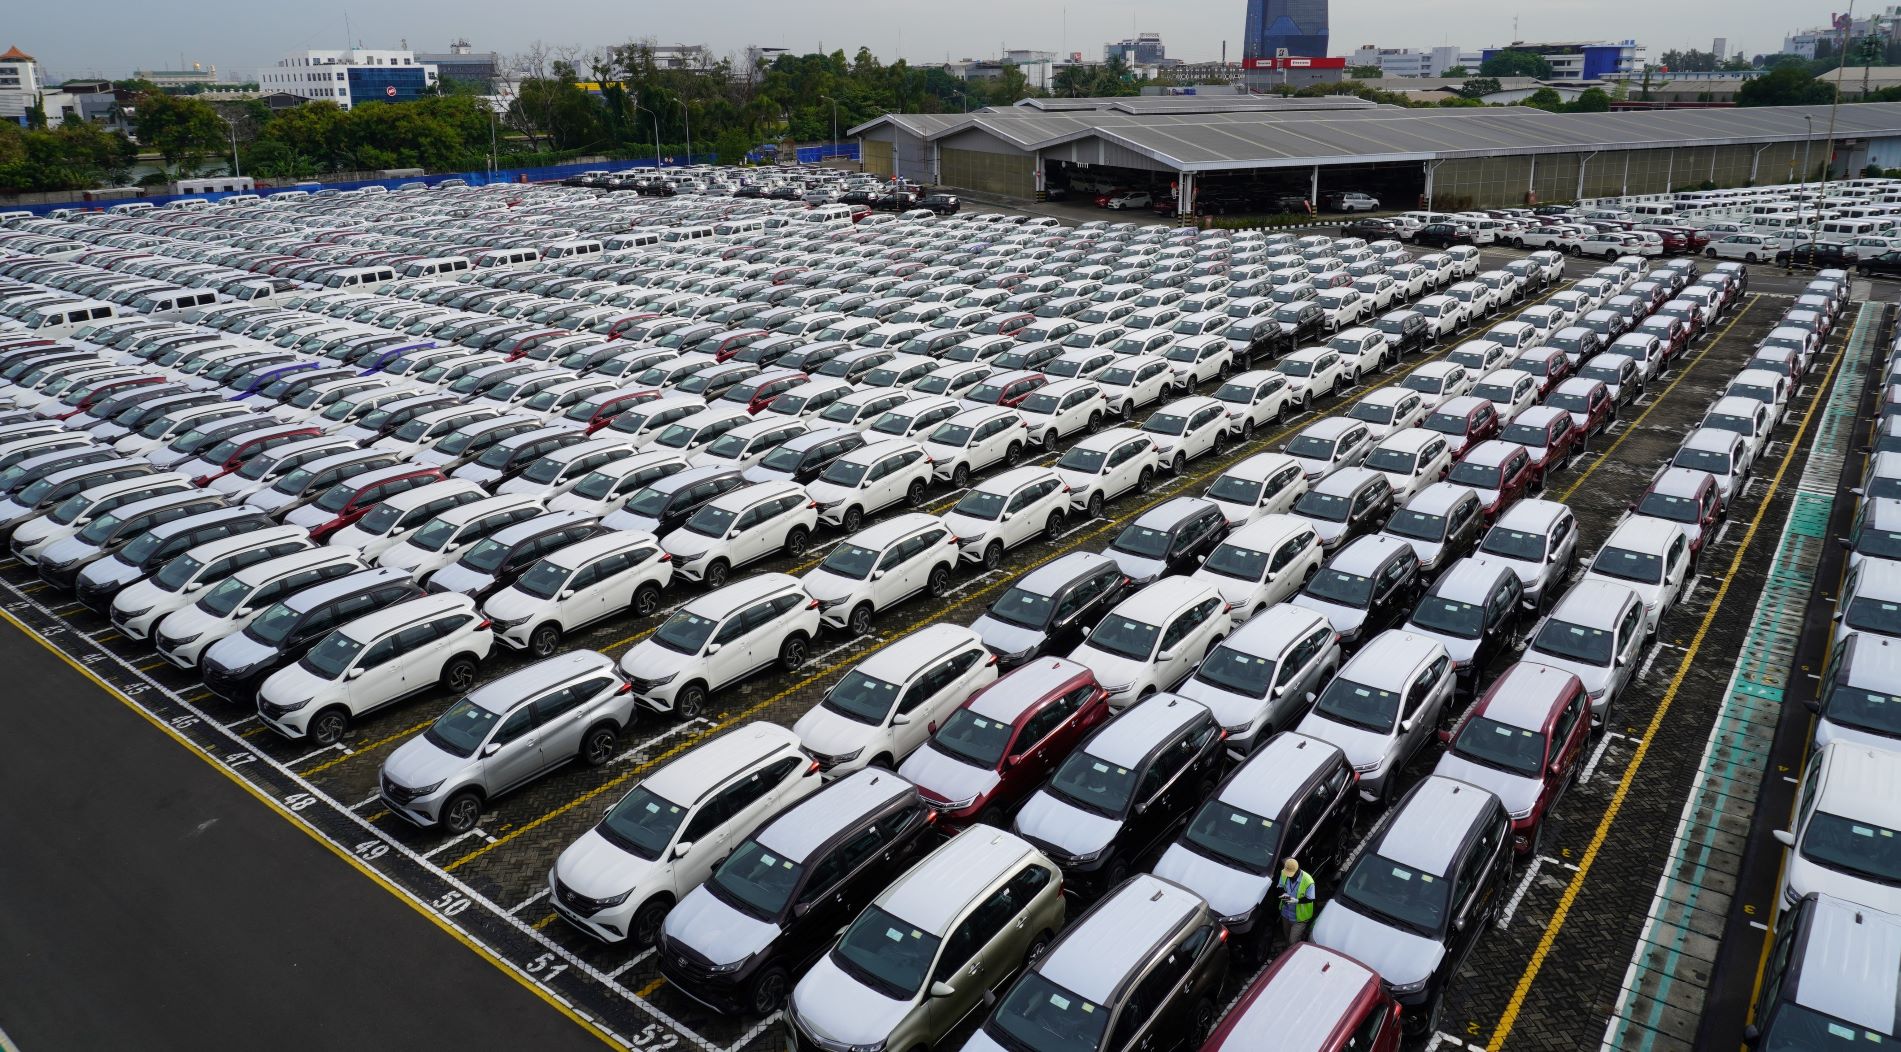 Penjualan Daihatsu Tembus di Angka Cantik Sekitar 123 Ribu Unit Hingga Agustus 2022